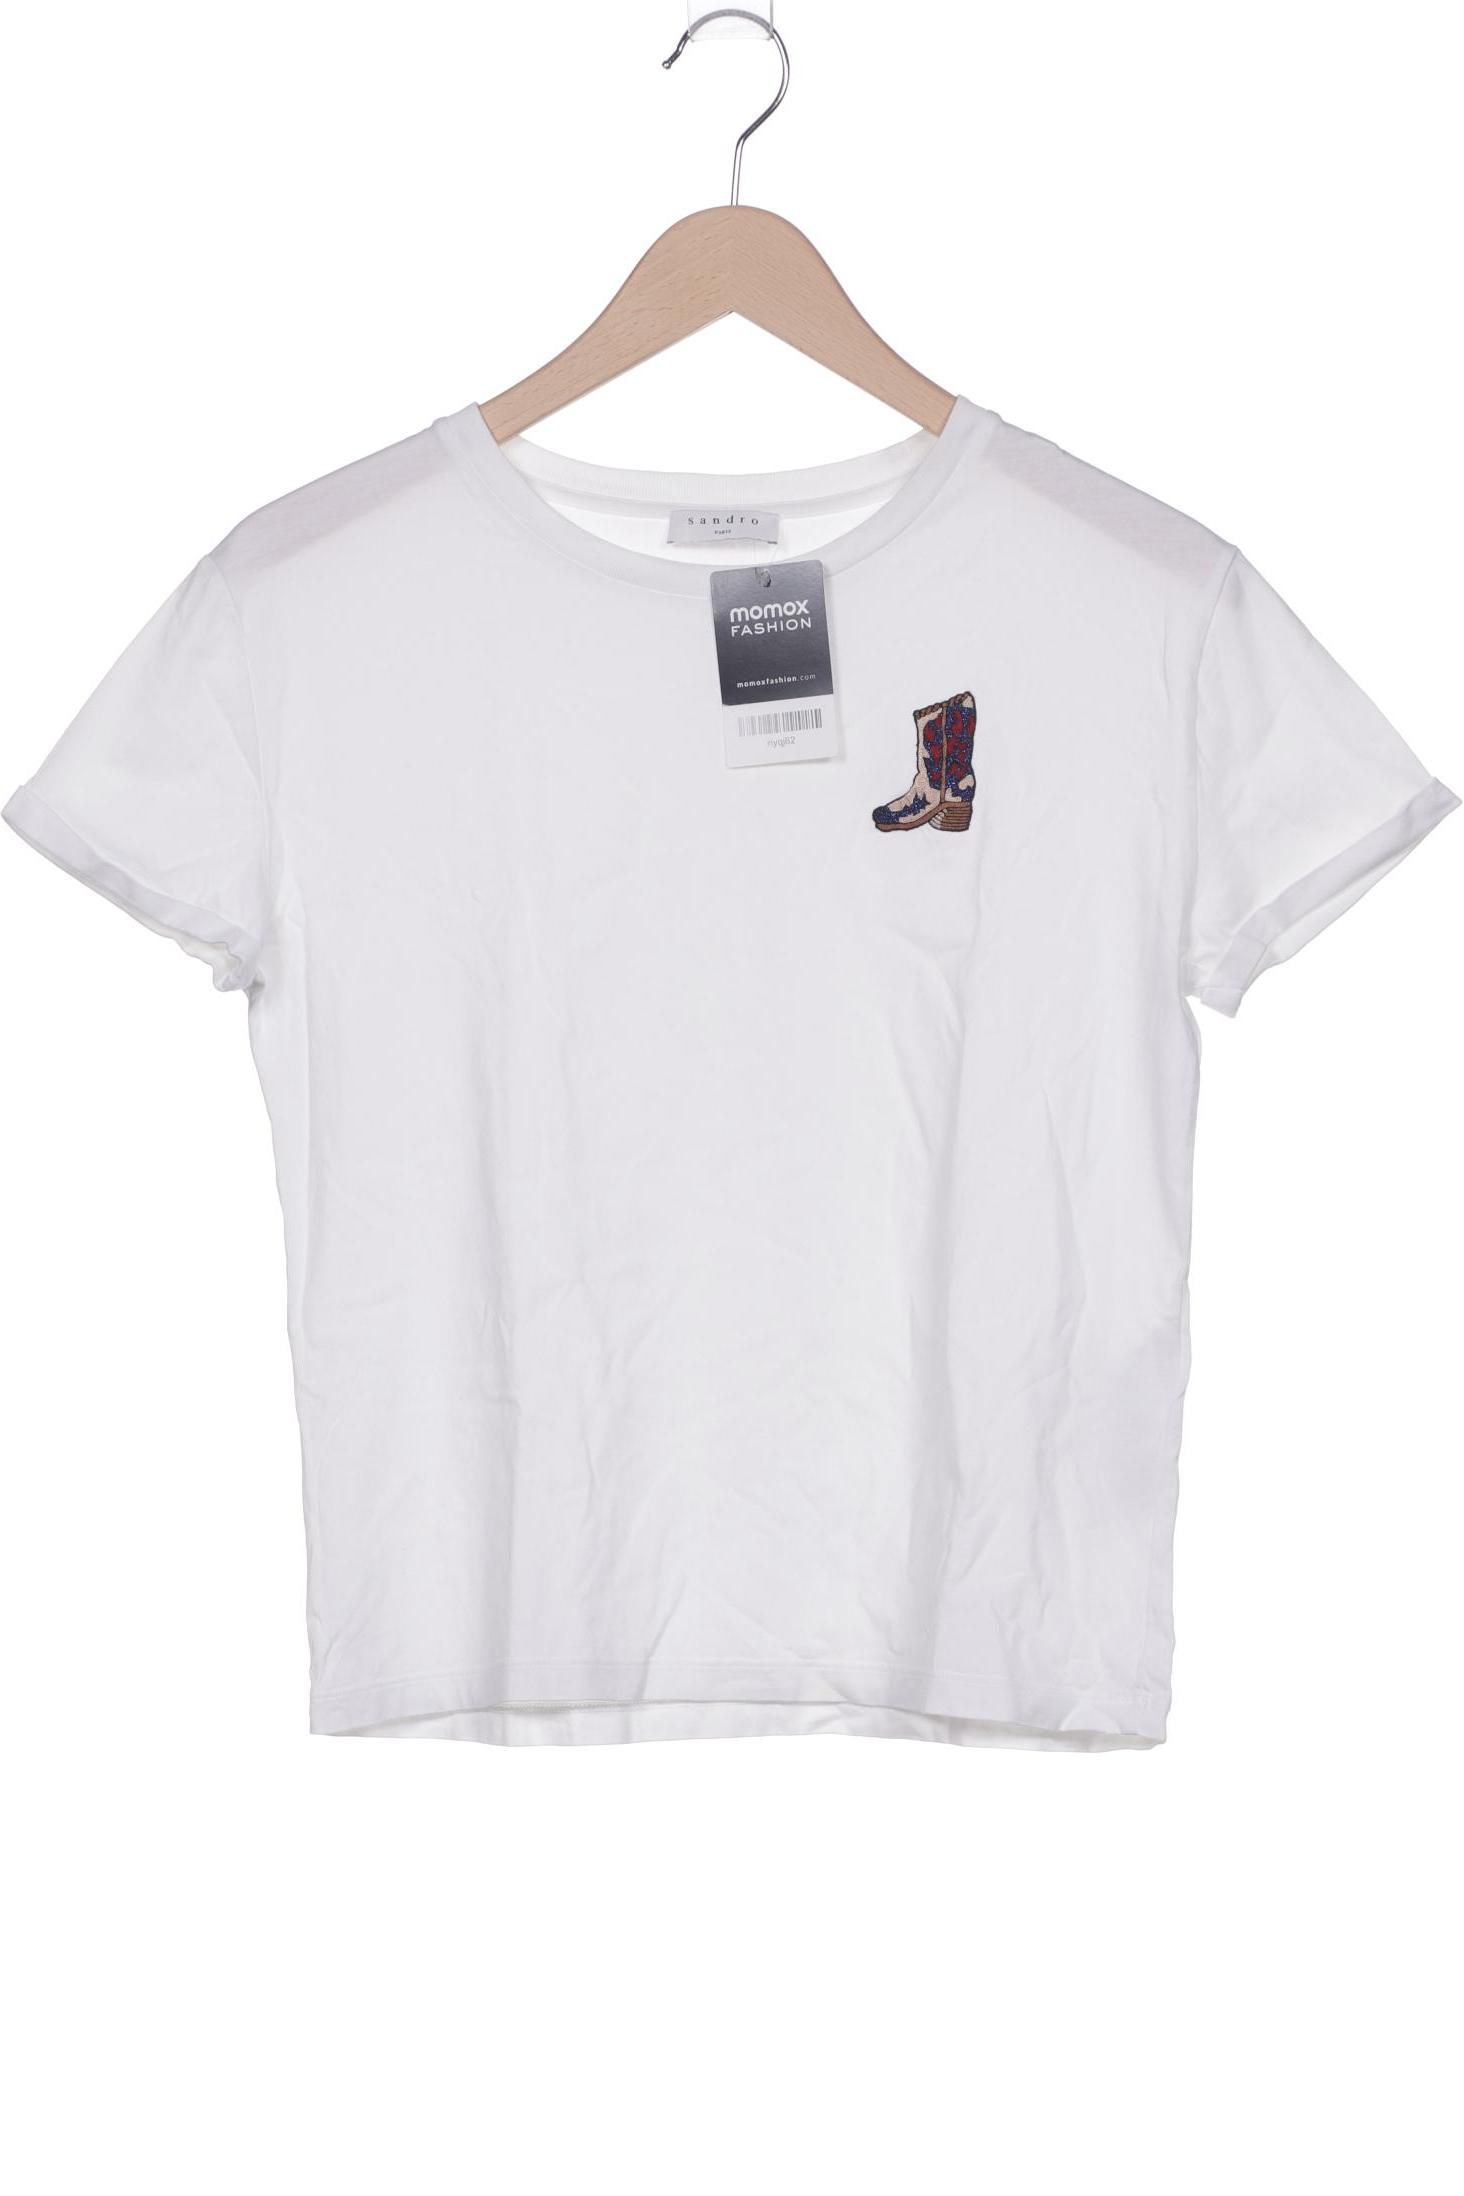 Sandro Damen T-Shirt, weiß, Gr. 36 von sandro